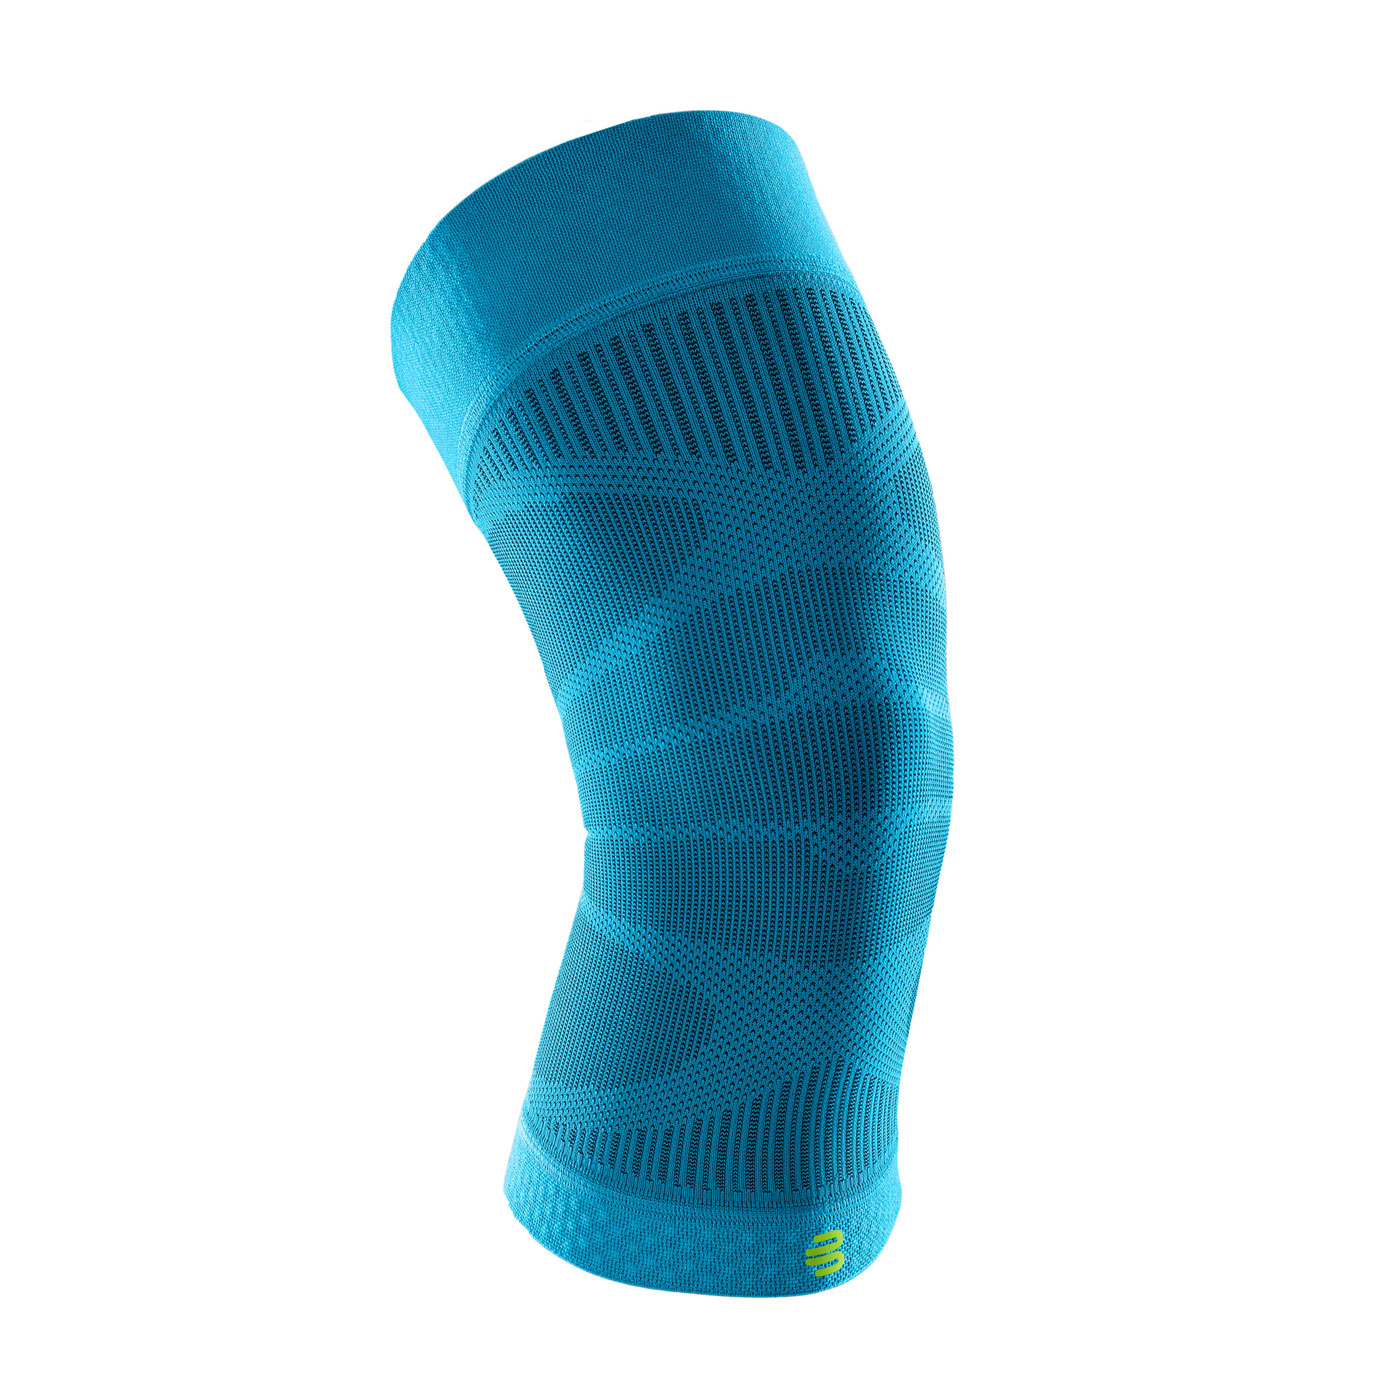 BAUERFEIND保爾範 專業運動壓縮護膝束套 70000364 - 水藍螢光綠